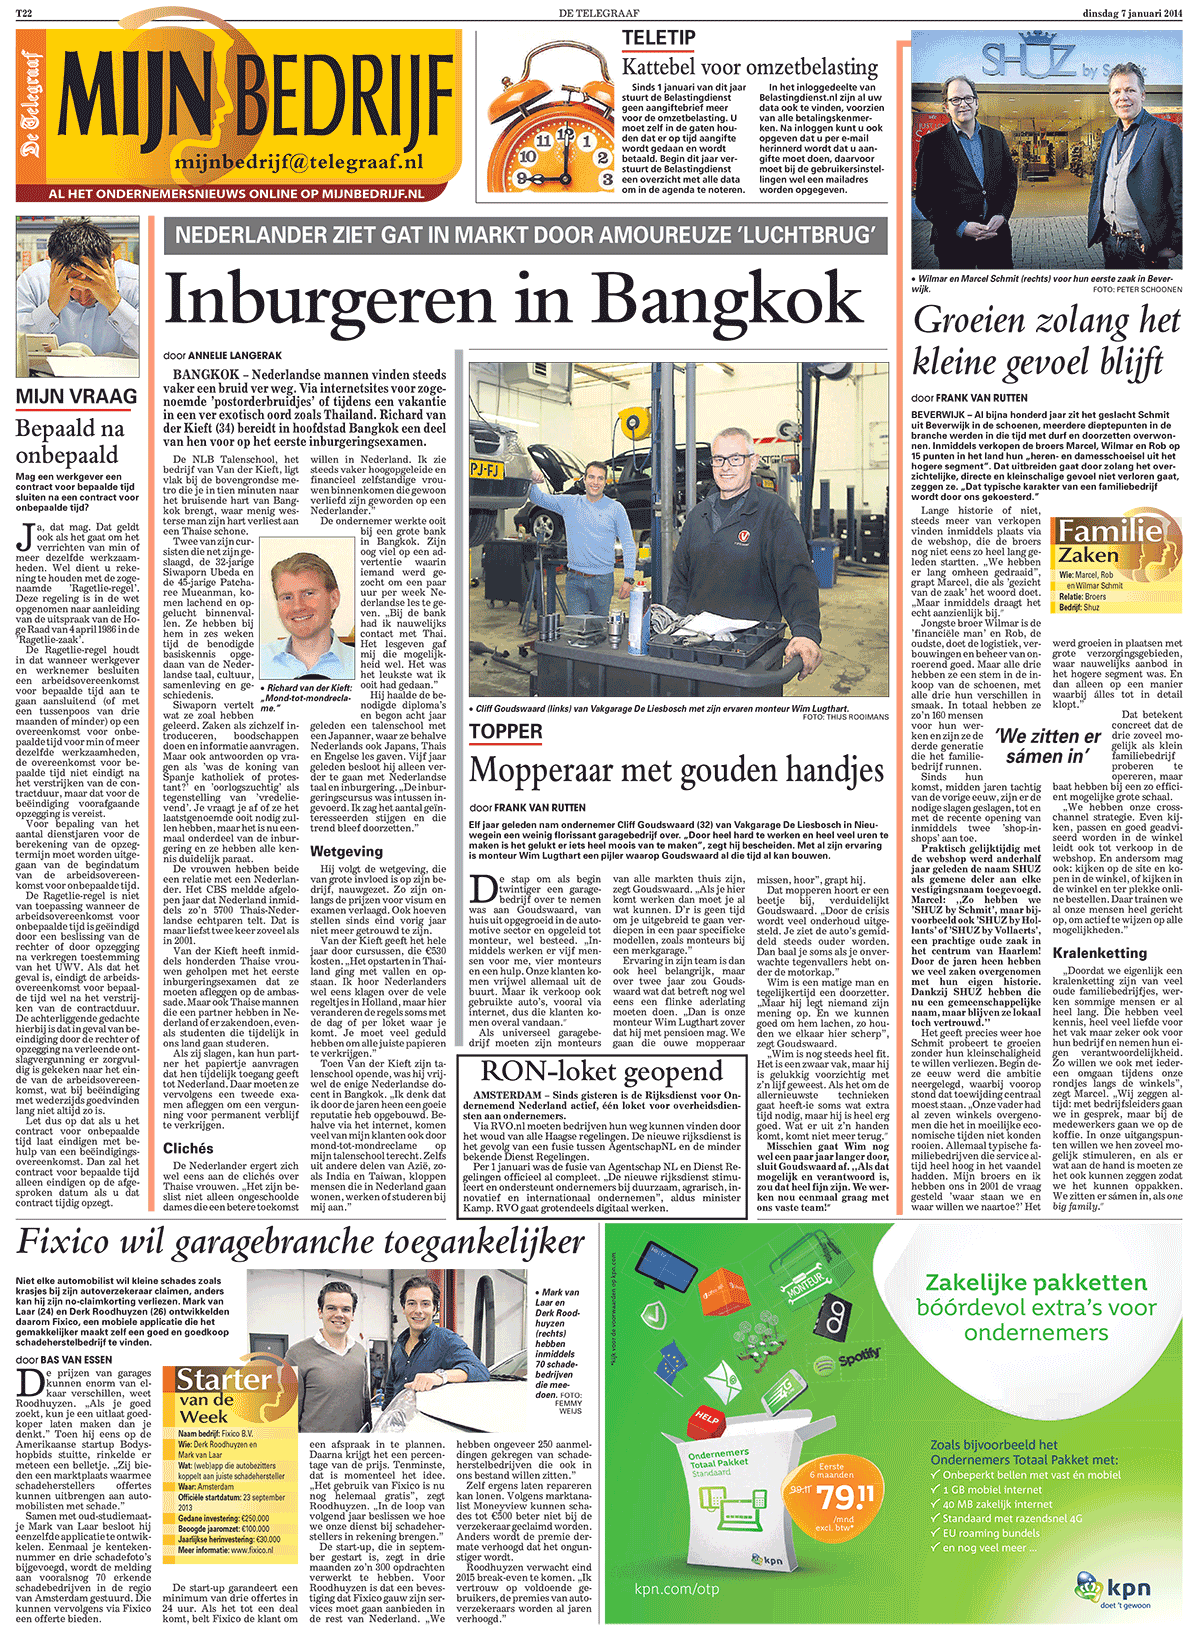 artikel in de telegraad - nederlands leren in bangkok